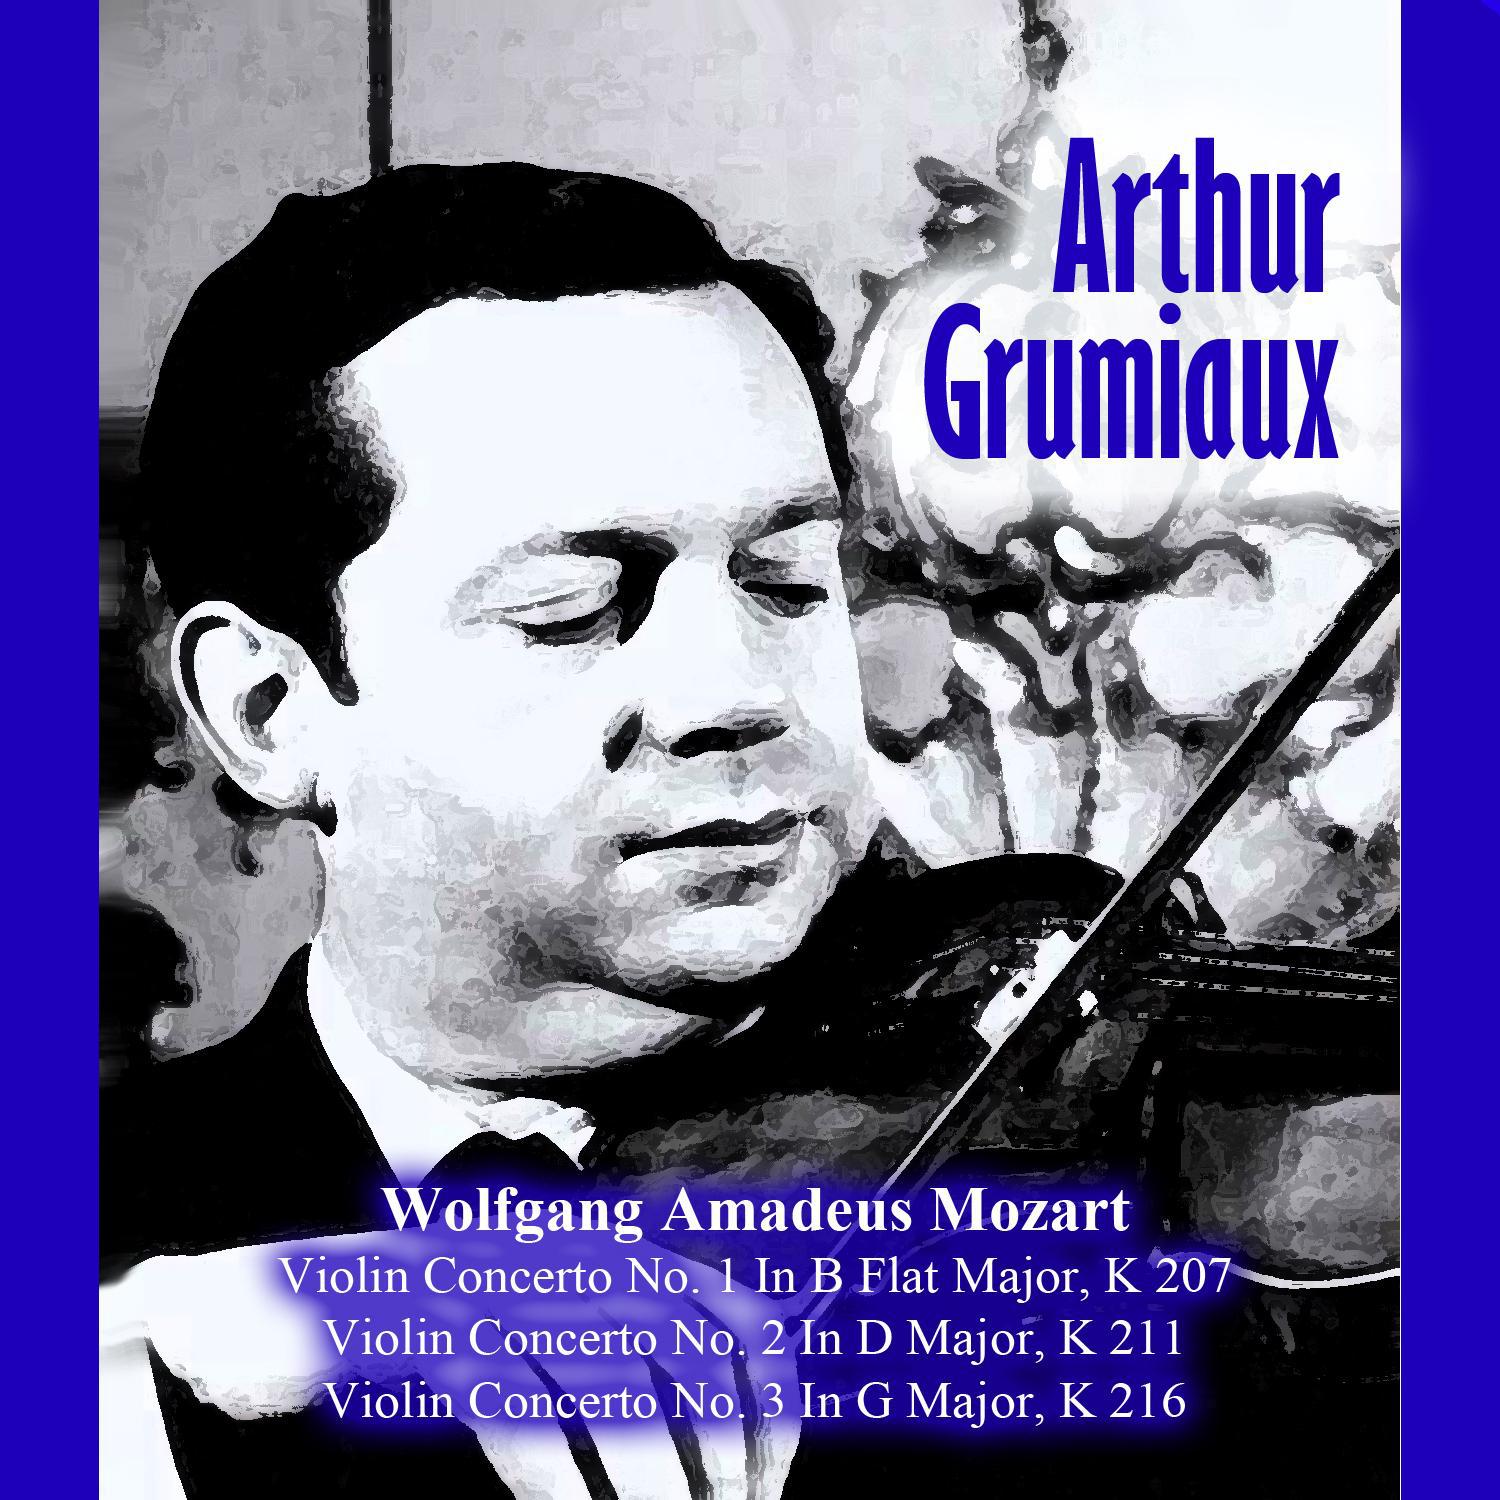 Violin Concerto No. 3 In G Major, K 216: III. Rondeau. Allegro